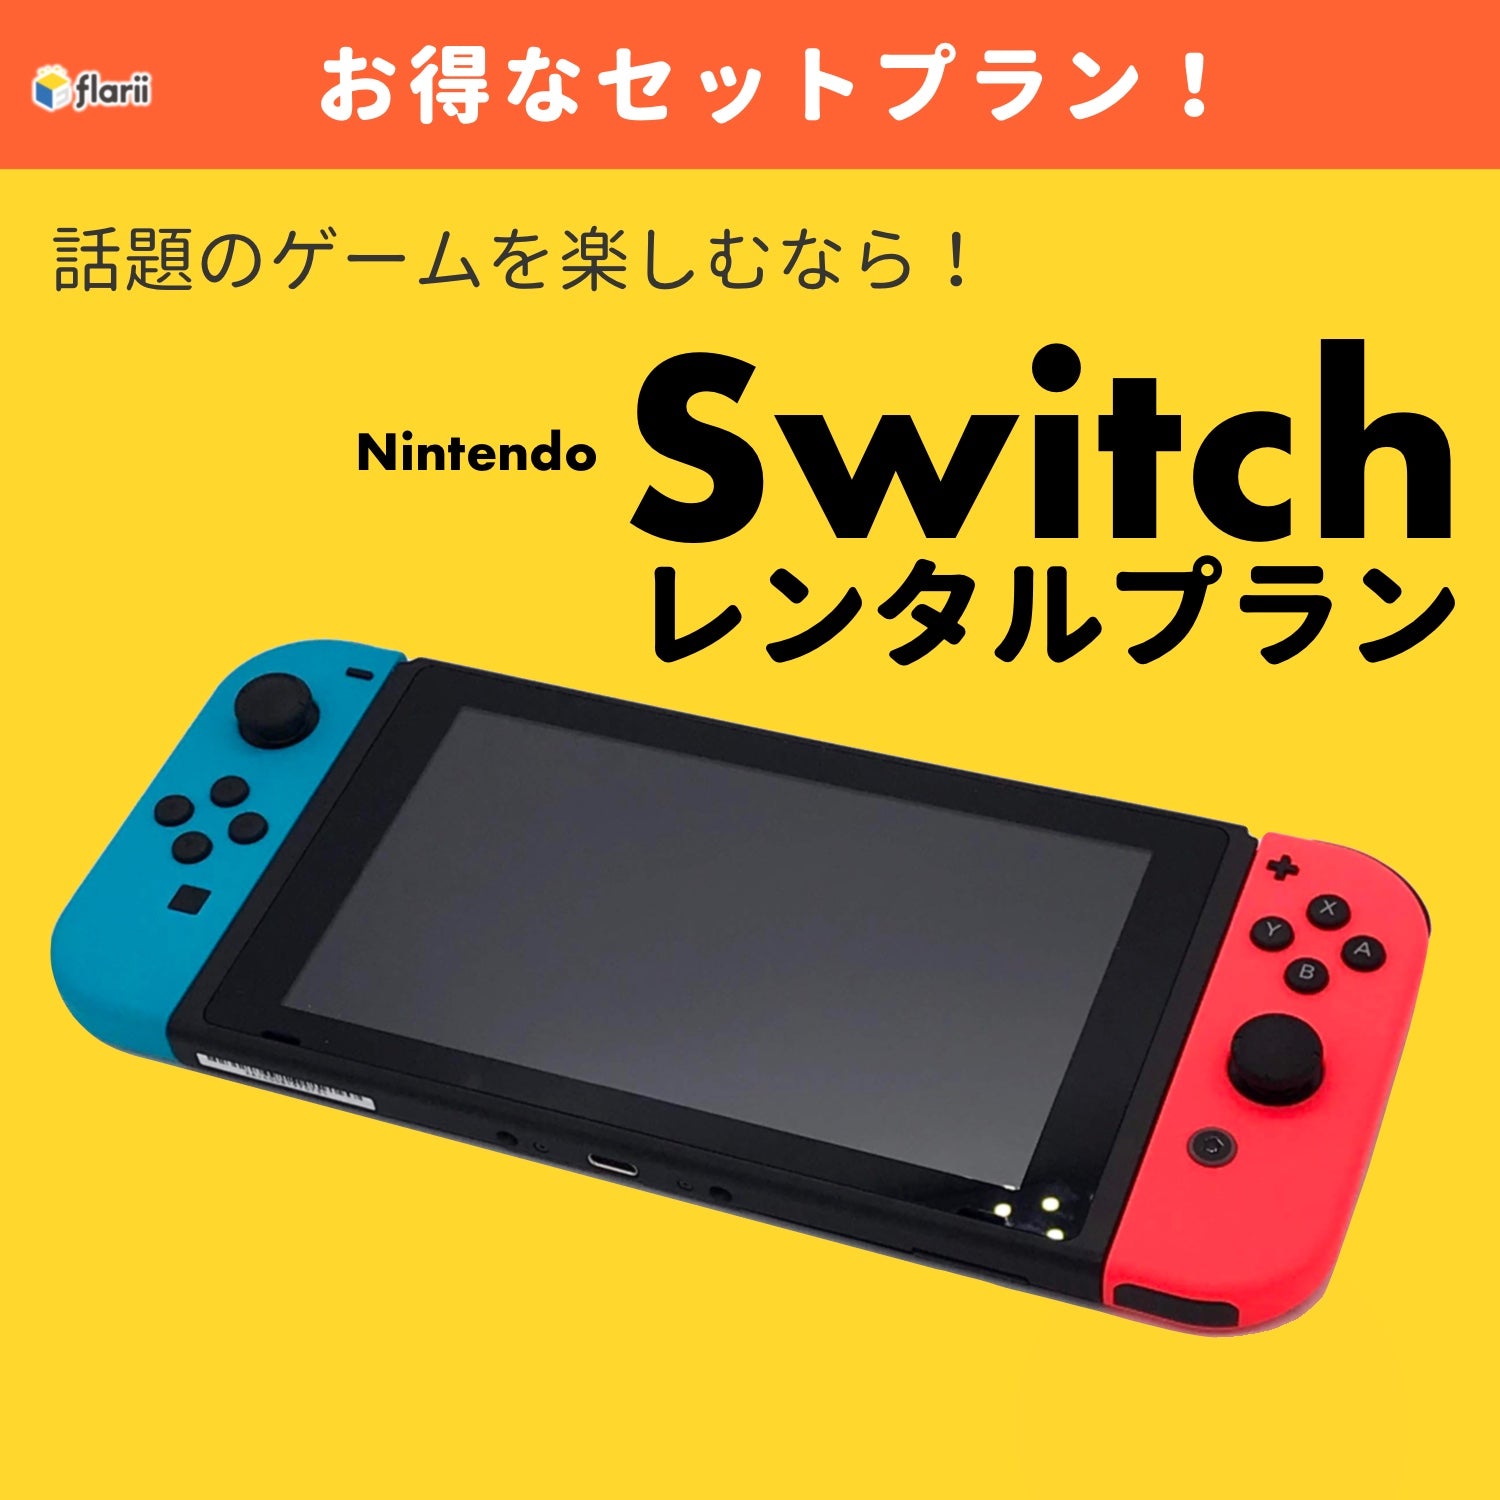 flarii×リモート応援プラン】 Nintendo Switch(任天堂スイッチ